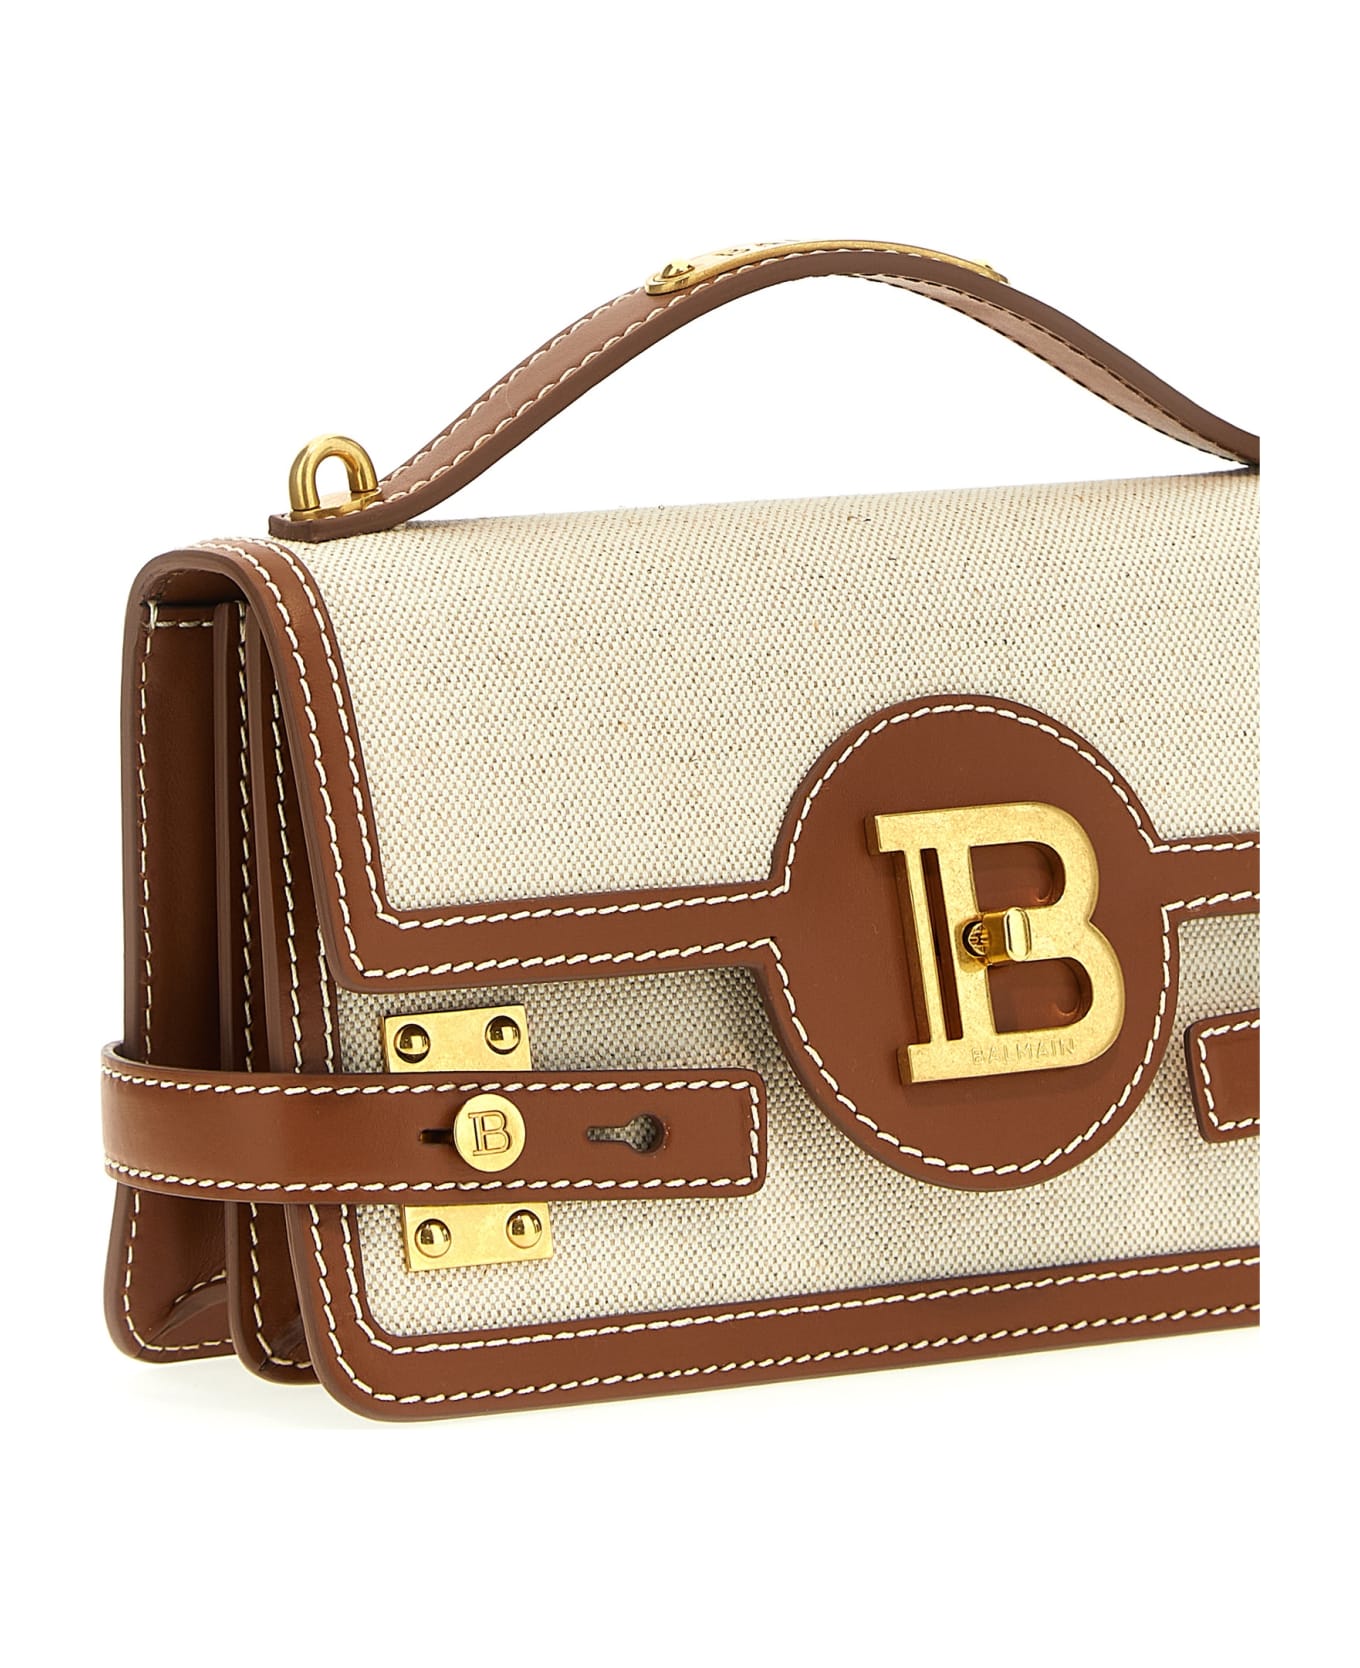 Balmain B-buzz 24 Handbag - Beige トートバッグ